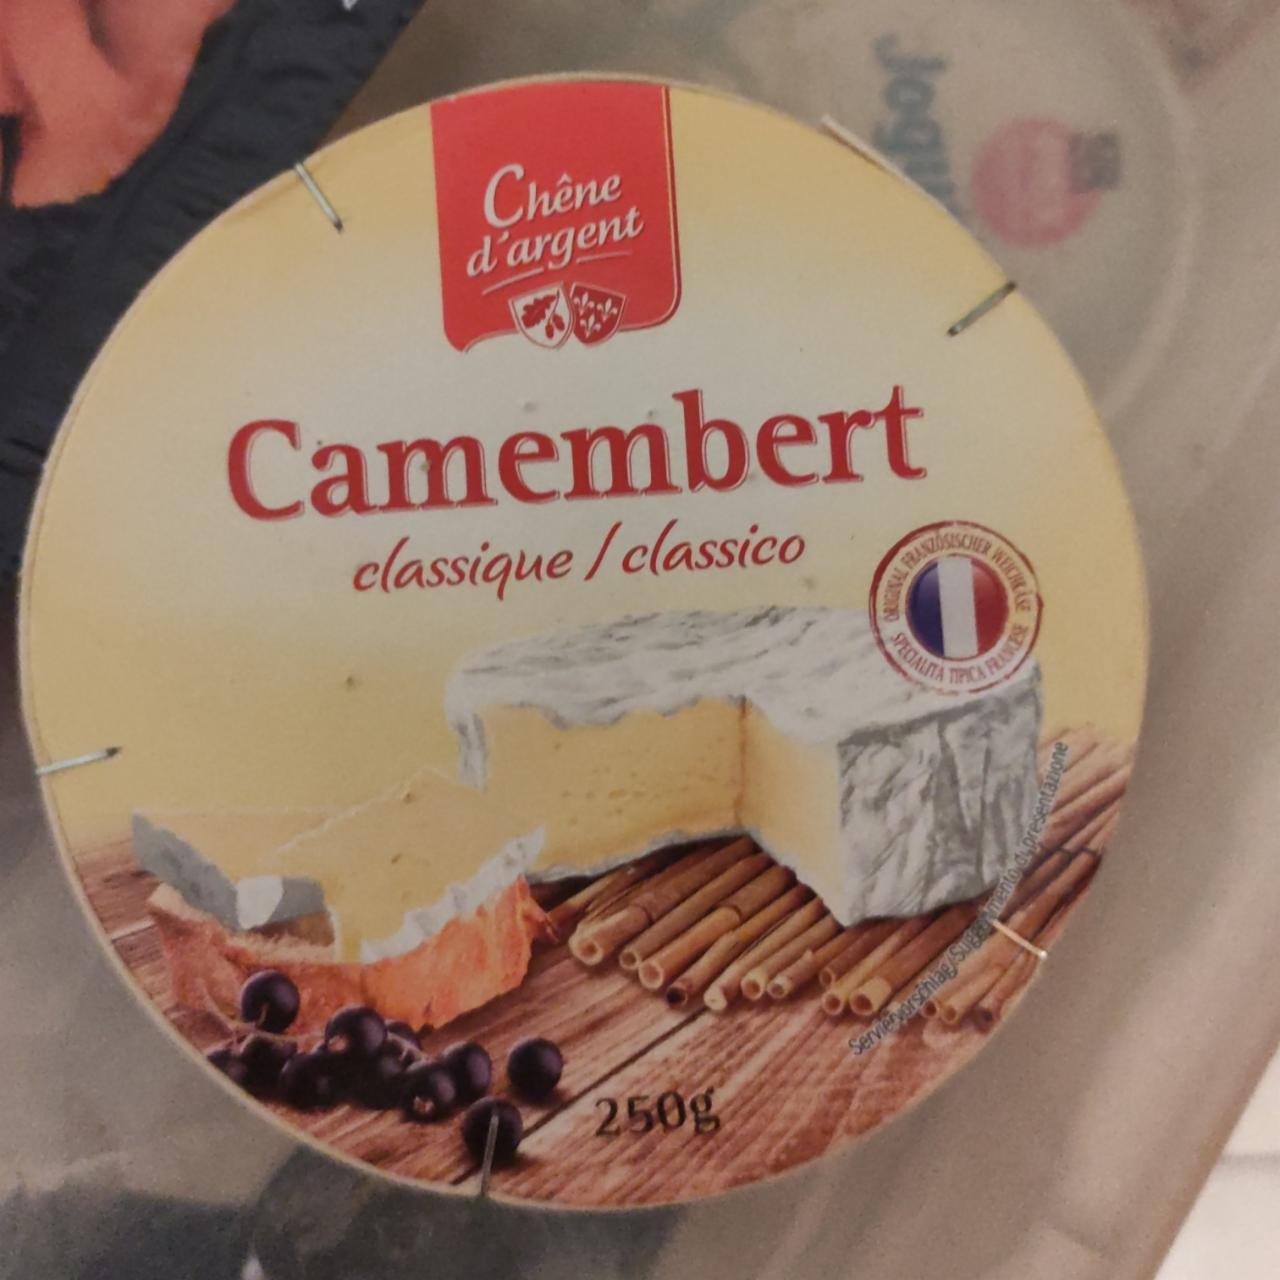 Фото - Сыр камамбер Camembert 45% Chêne d'argent